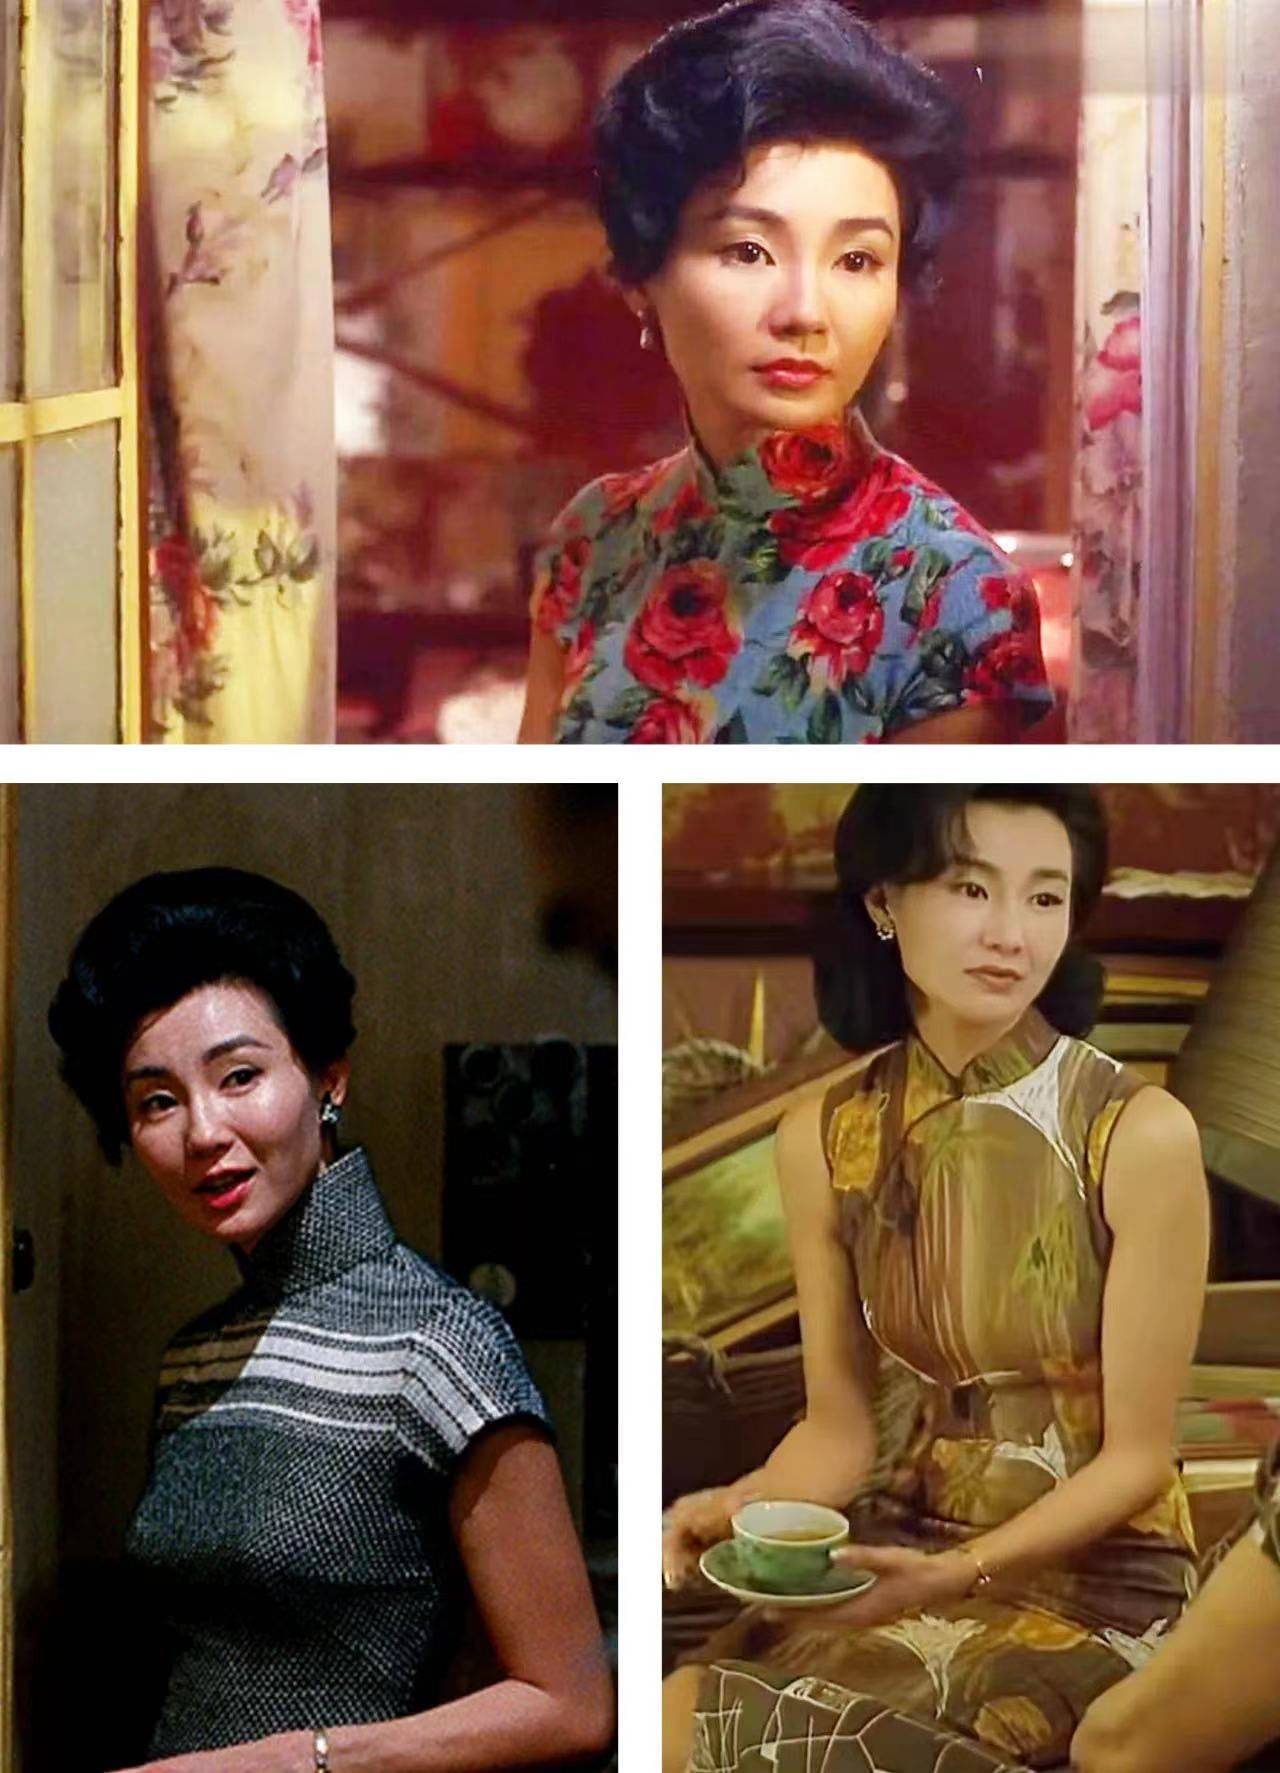 22年前《花样年华》中的张曼玉,是旗袍女子天花板没错吧!